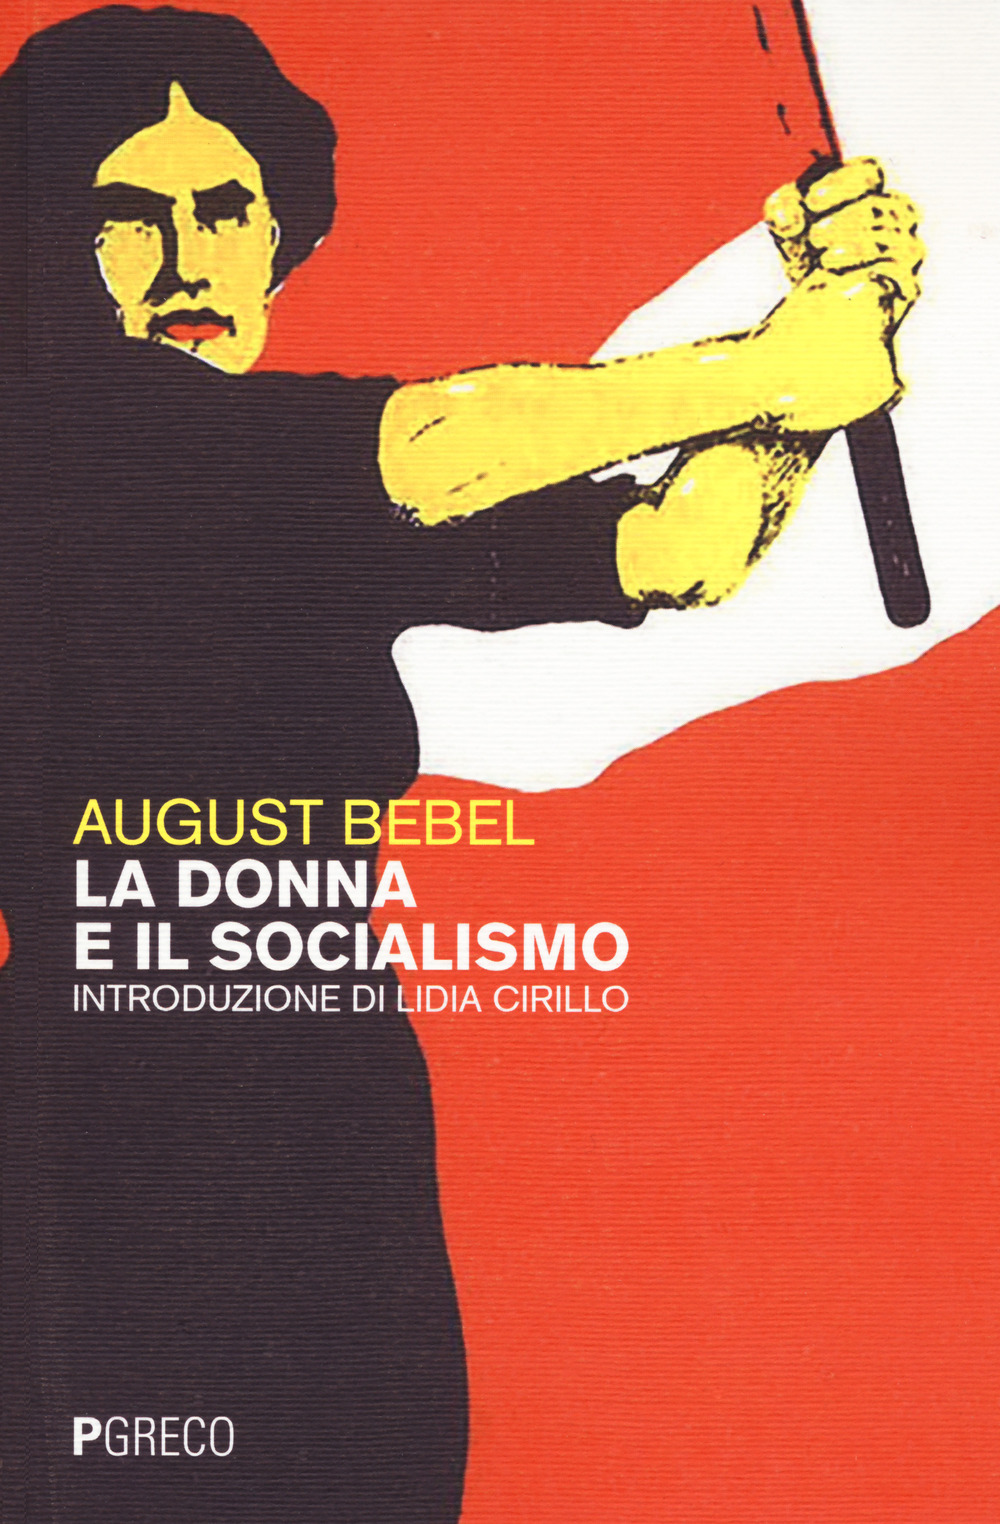 Libri Bebel August - La Donna E Il Socialismo NUOVO SIGILLATO, EDIZIONE DEL 09/06/2021 SUBITO DISPONIBILE